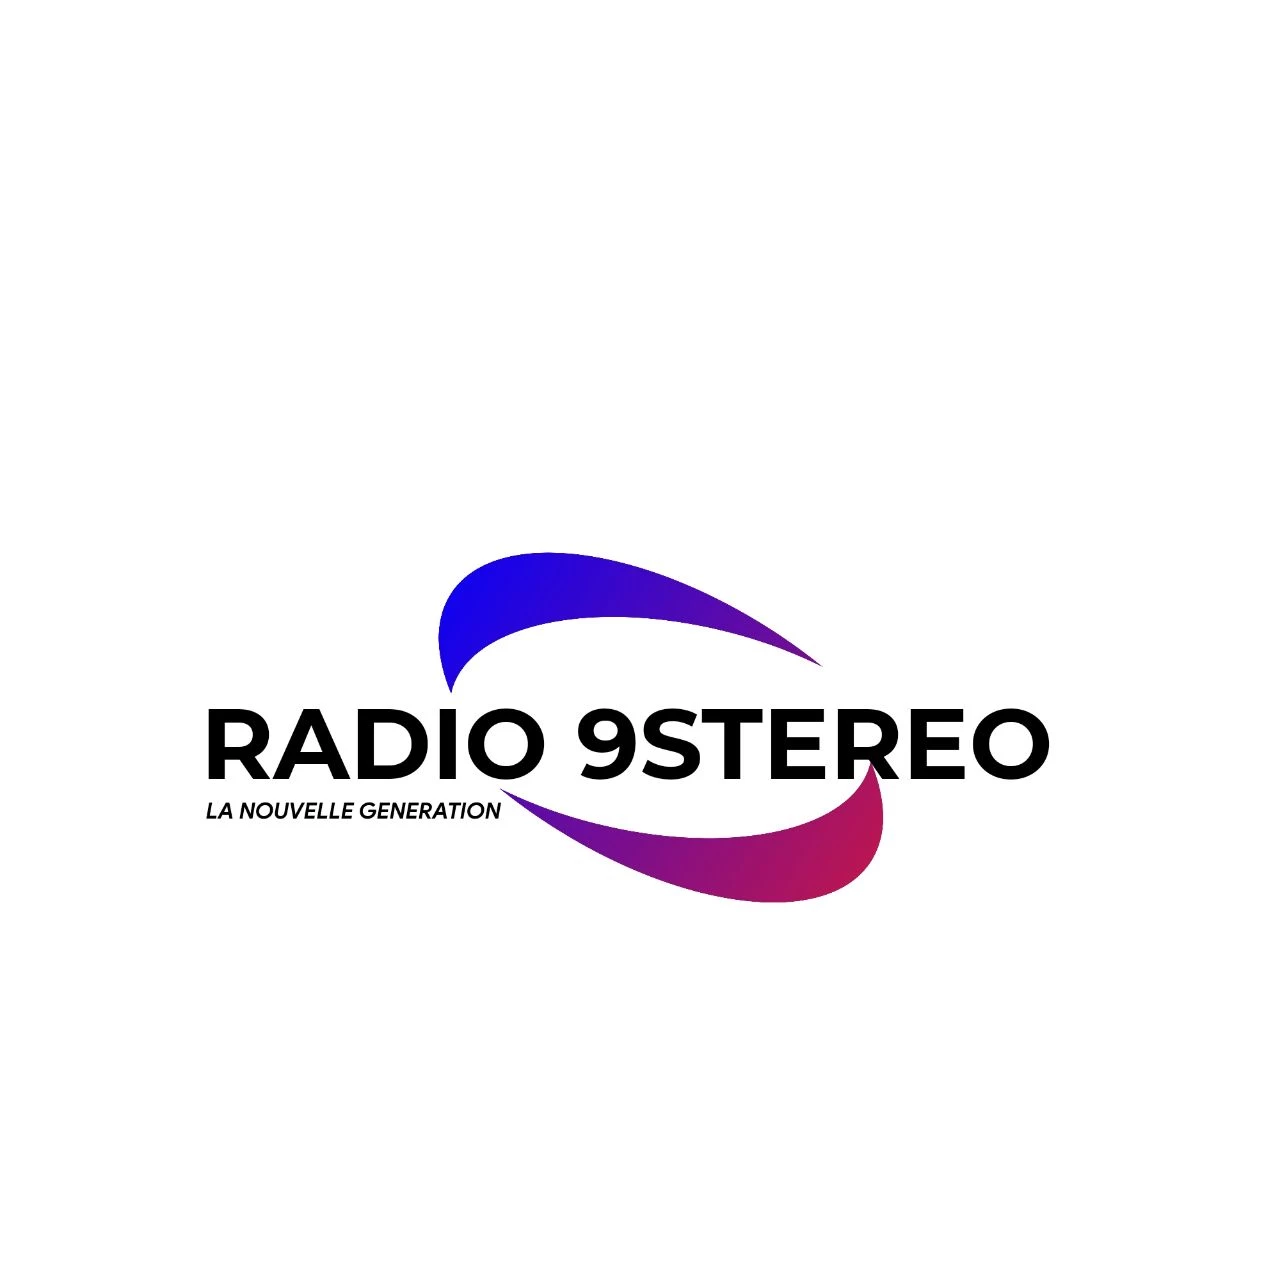 Radio 9 stéréo